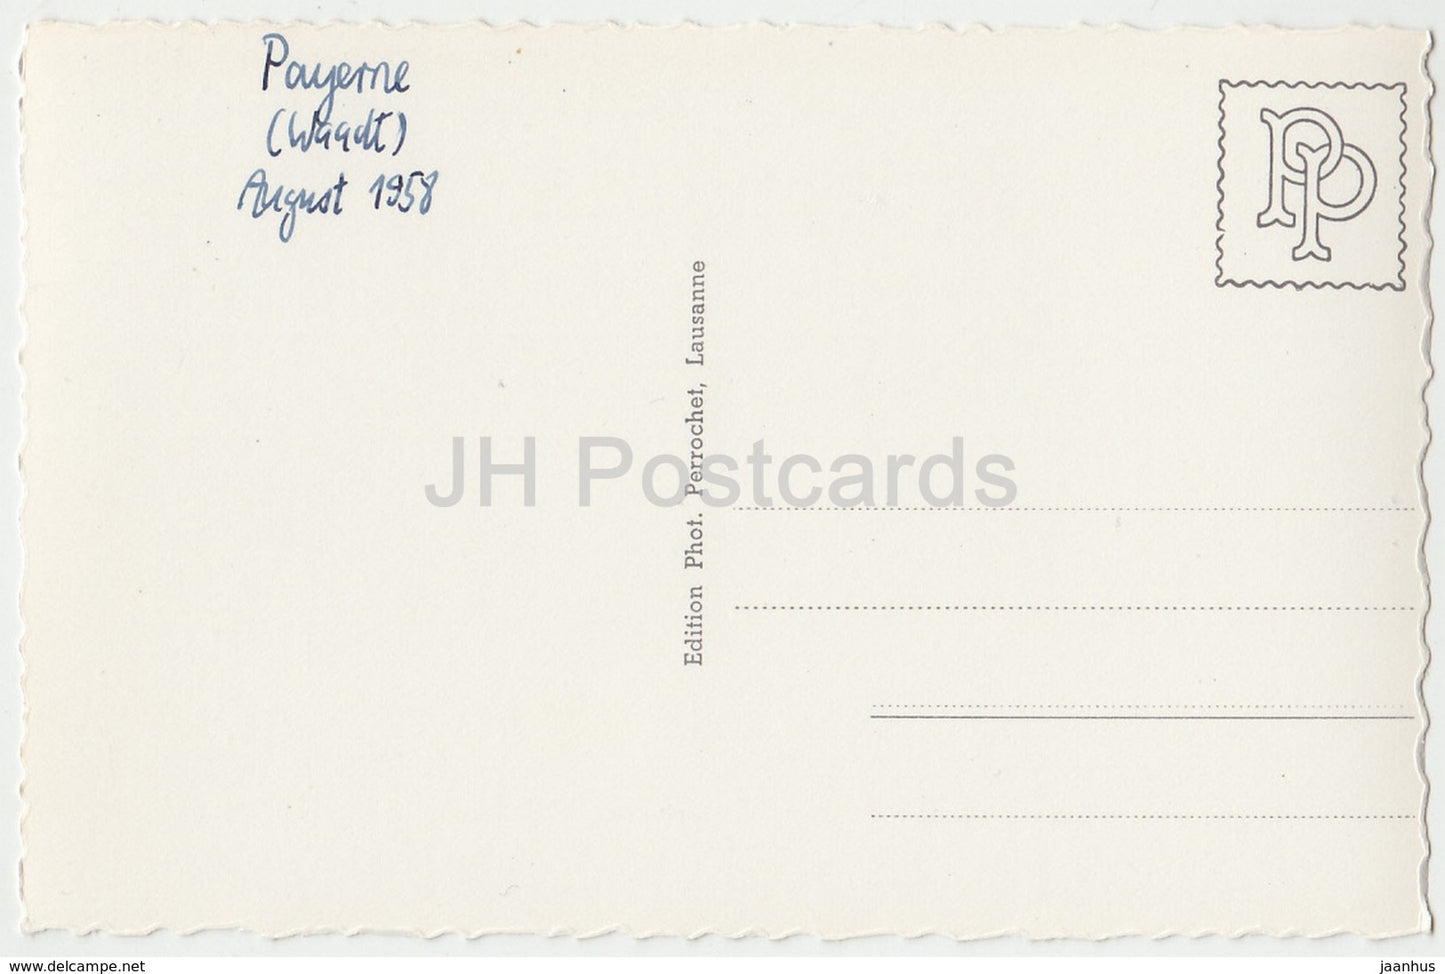 Payerne - L'Abbatiale illuminée - 8062 - Suisse - 1958 - cartes postales anciennes - oblitérée